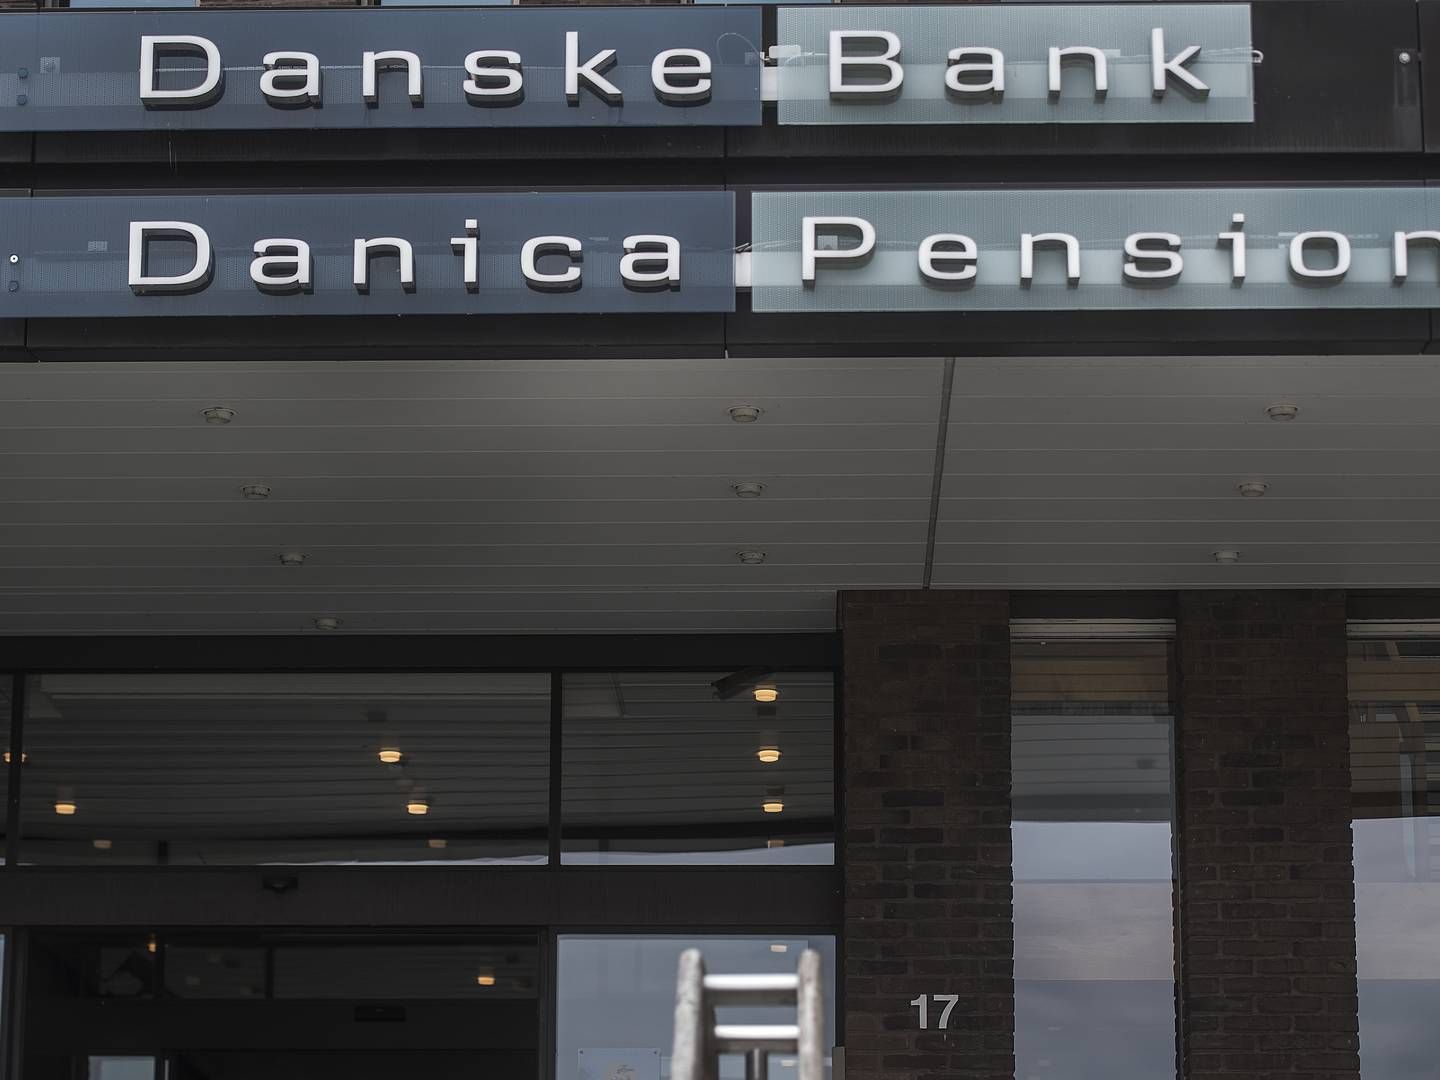 Danica Pension er en del af Danske Bank, som fredag har præsenteret regnskab for andet kvartal. | Foto: Mogens Flindt